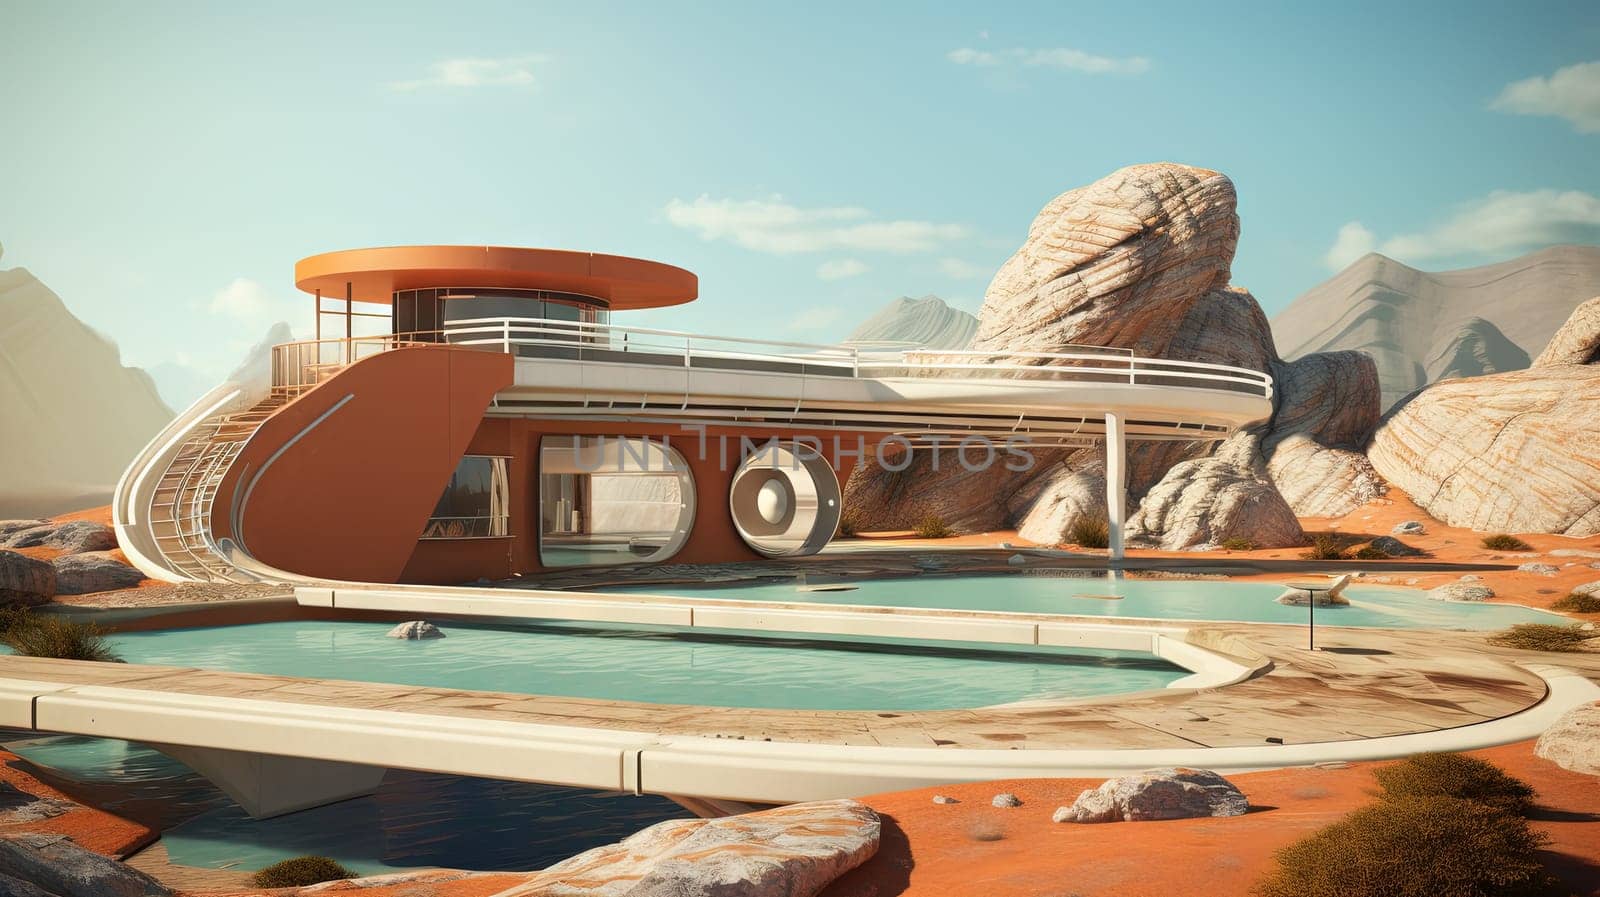 Retro futuristic architecture in sci-fi scene on the desert planet. Alien landscape with nostalgic retro future constructions. Generated AI. by SwillKch